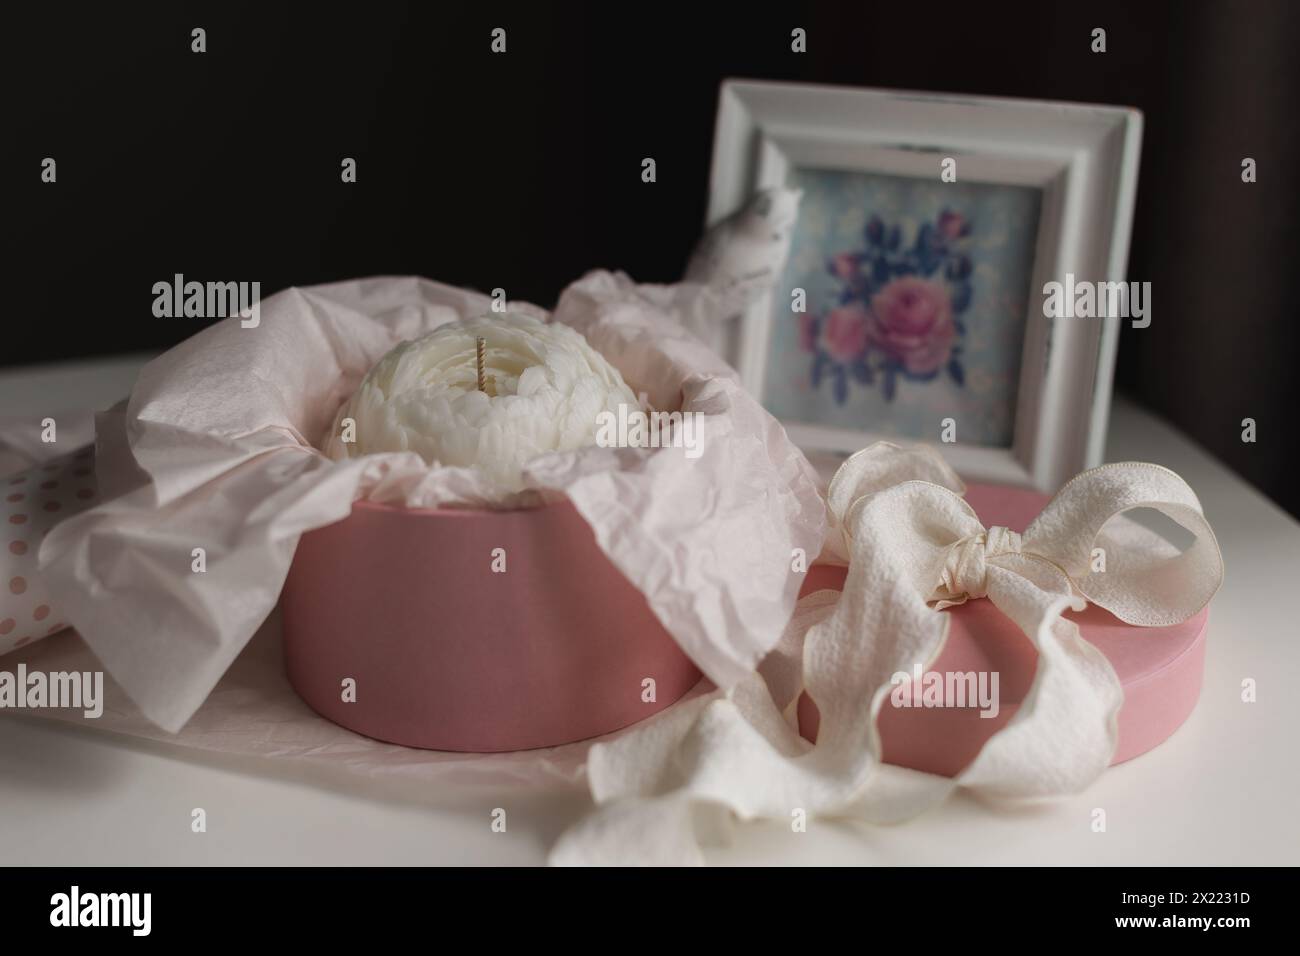 candela fatta a mano a forma di fiore in una confezione regalo. Foto di alta qualità Foto Stock